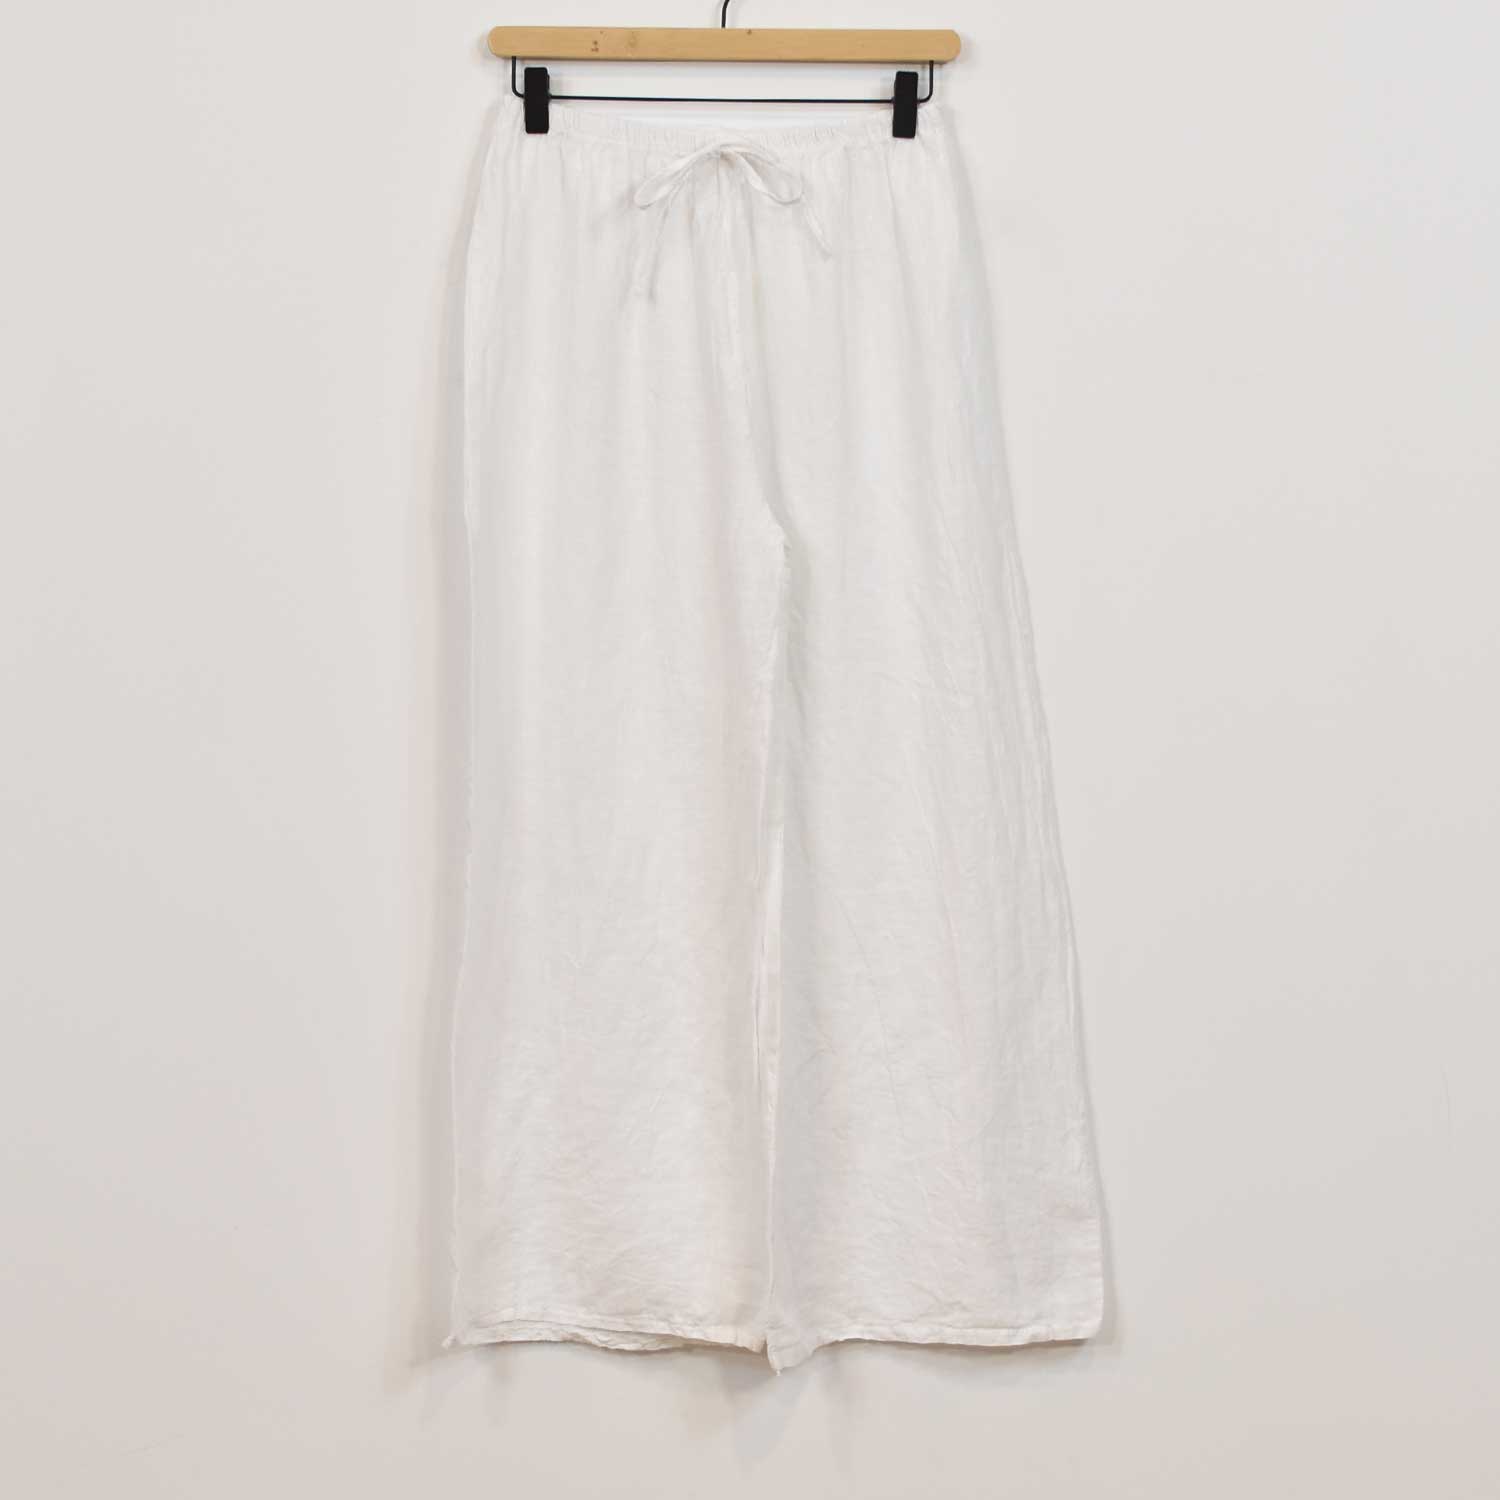 Pantalón lino recto blanco